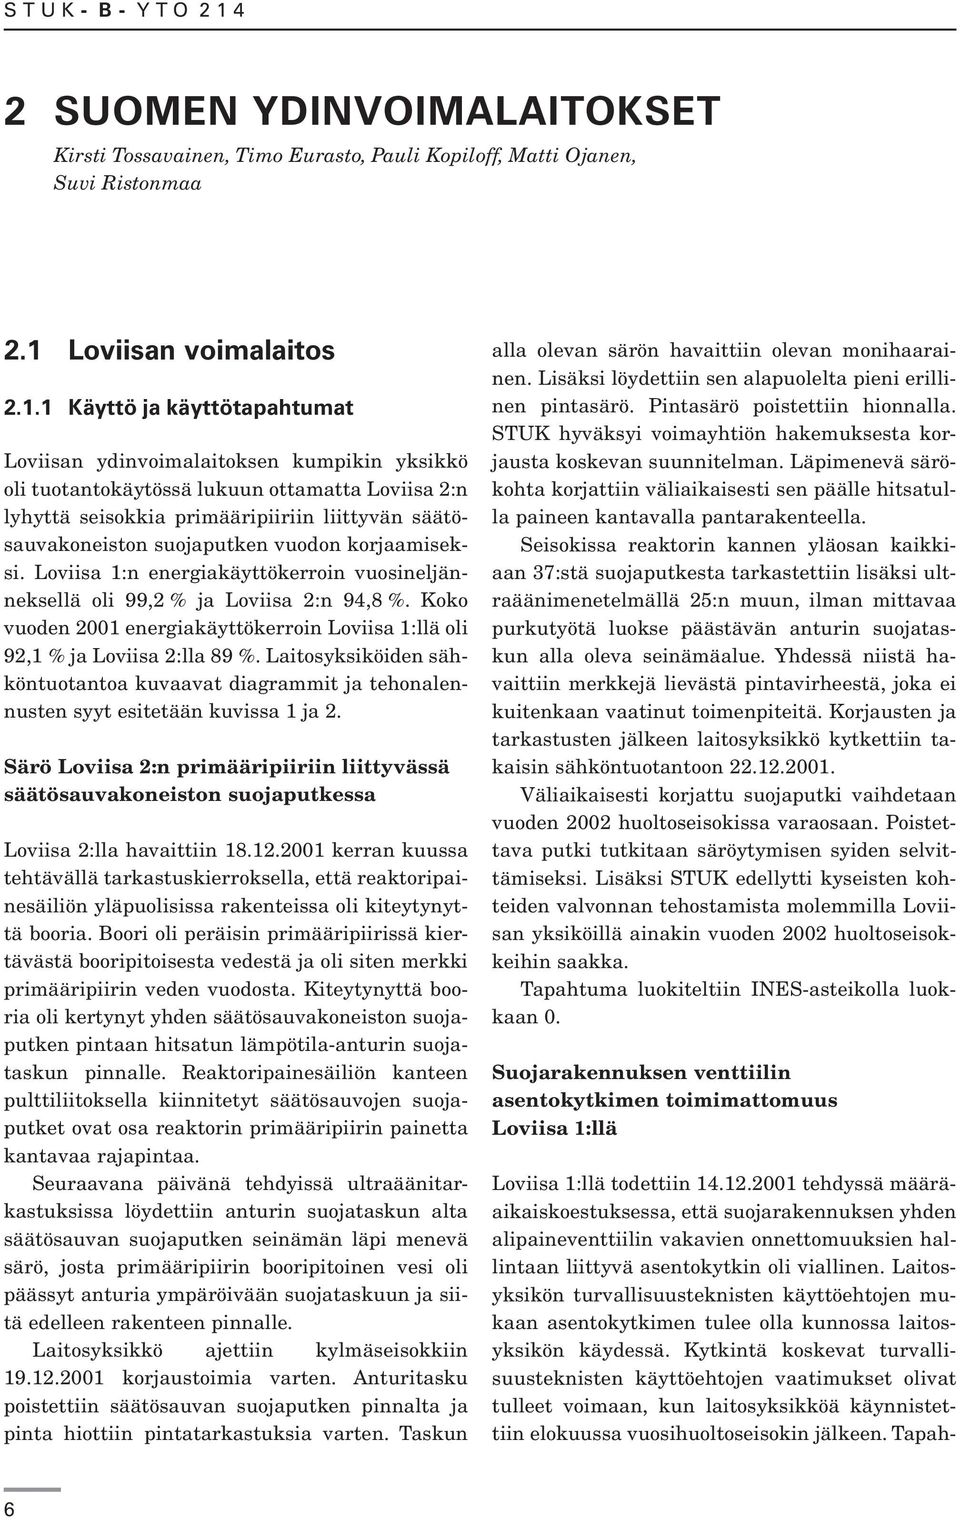 1 Käyttö ja käyttötapahtumat Loviisan ydinvoimalaitoksen kumpikin yksikkö oli tuotantokäytössä lukuun ottamatta Loviisa 2:n lyhyttä seisokkia primääripiiriin liittyvän säätösauvakoneiston suojaputken